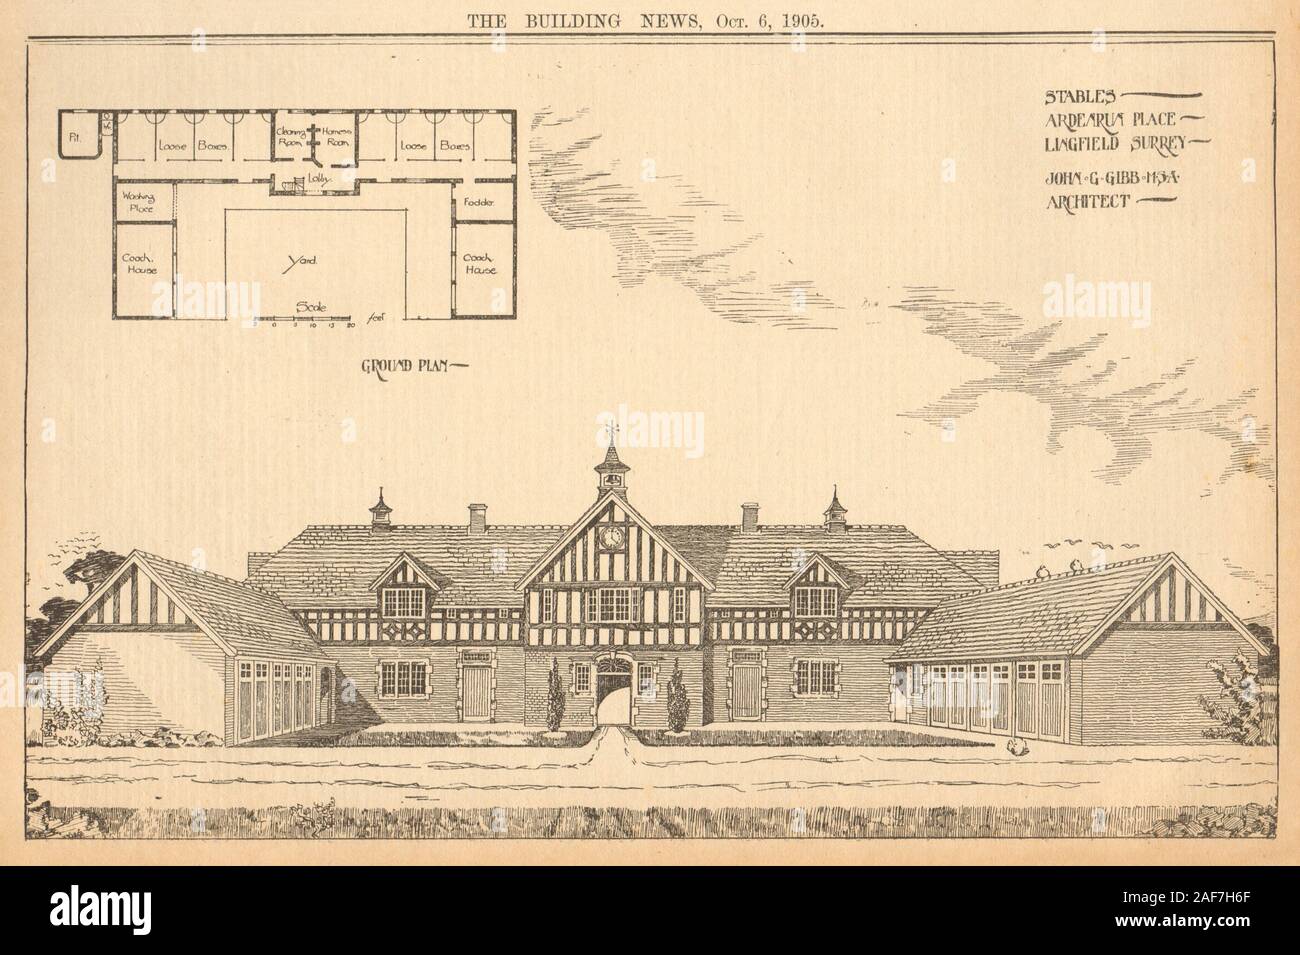 Équitation, Ardenrun Place, Lingfield, Surrey, John G. Gibb, architecte 1905 imprimer Banque D'Images